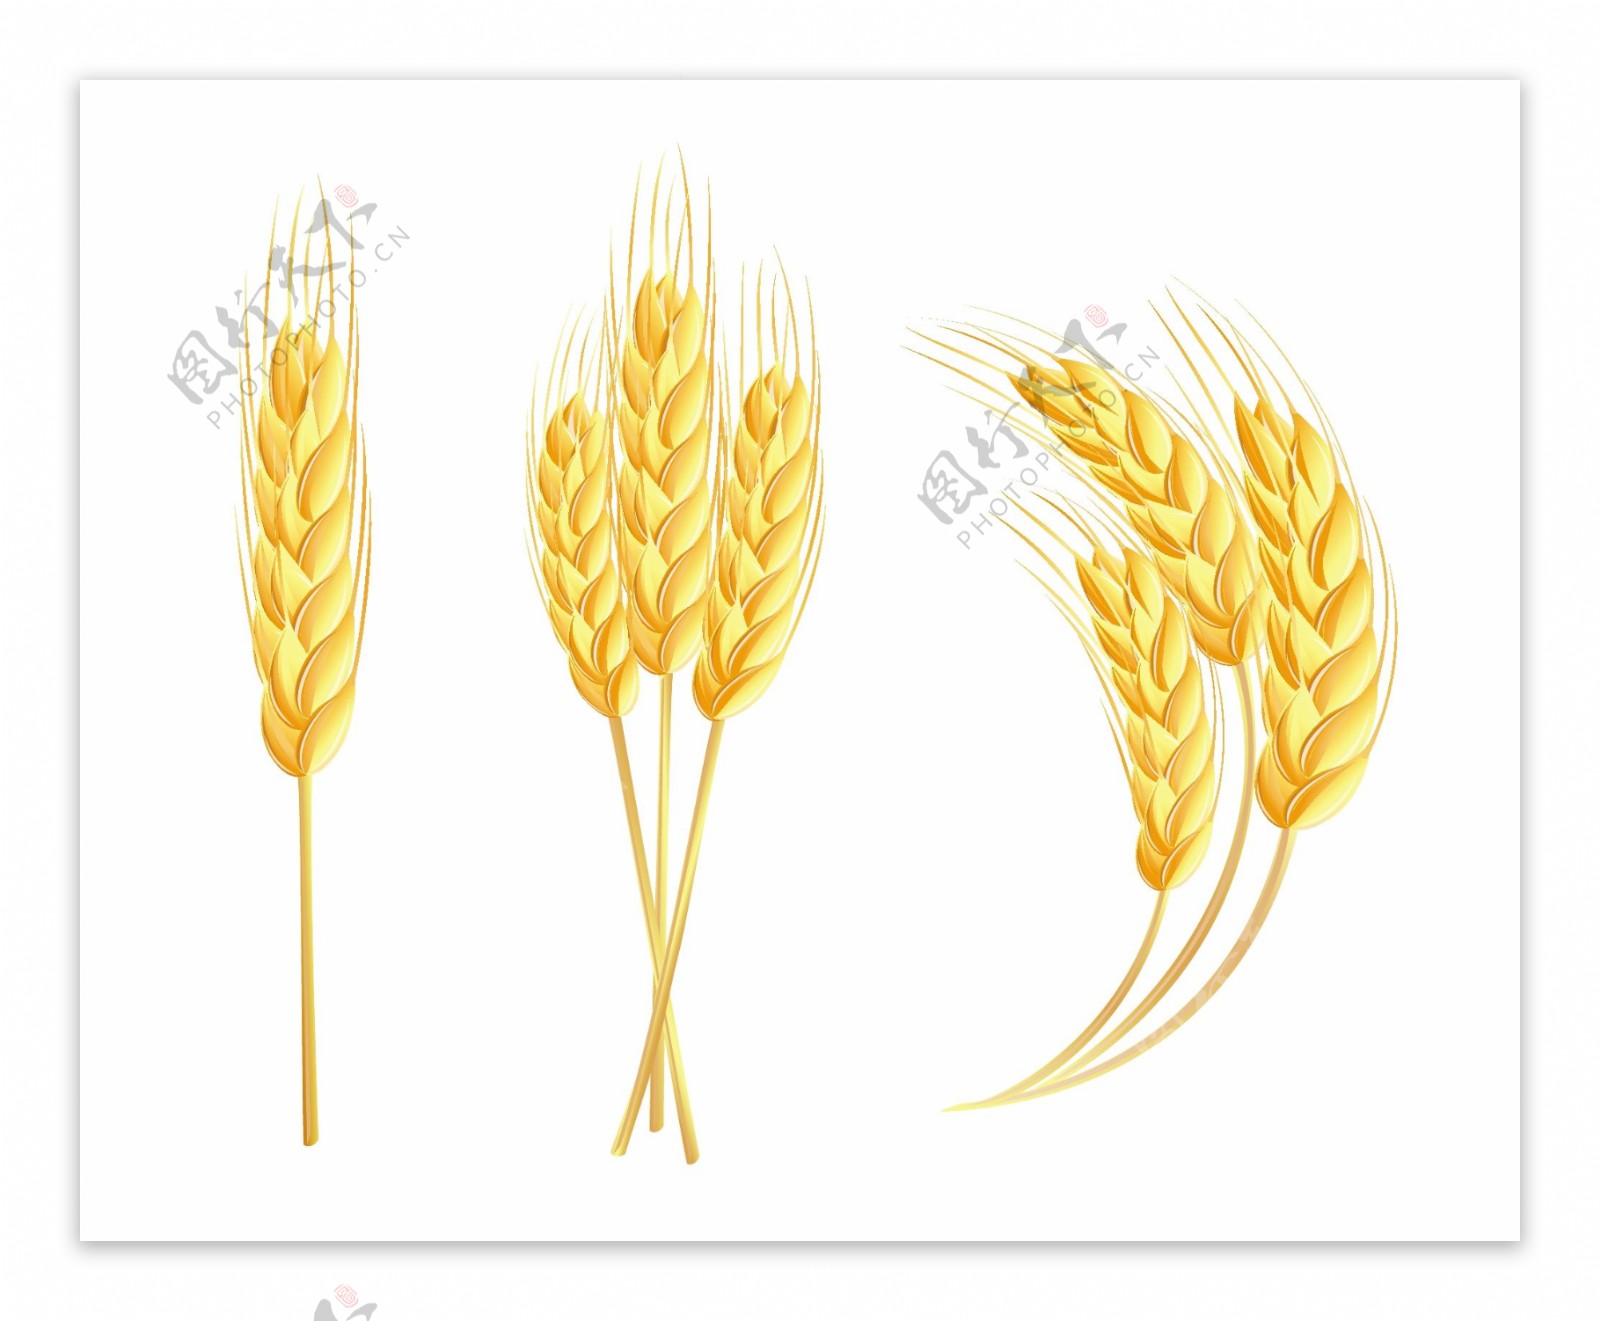 小麦ICON图标标志图片